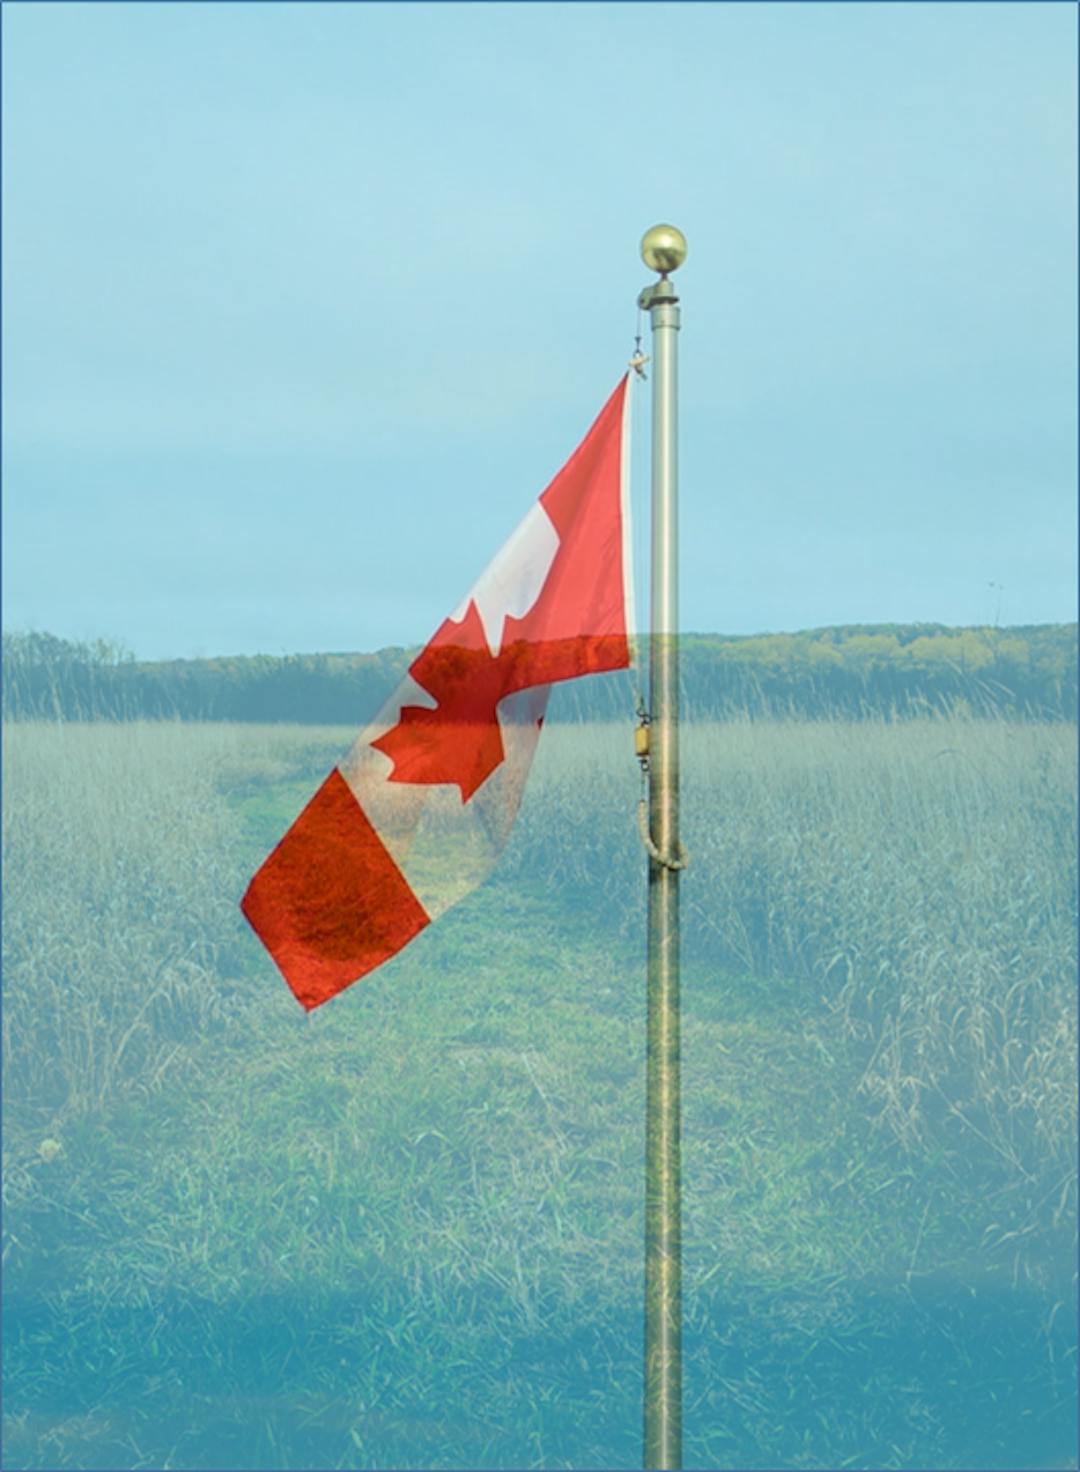 Image du drapeau du Canada imposé sur un champ agricole, représentant le mandat pan-canadien de l'organisme consultatif.